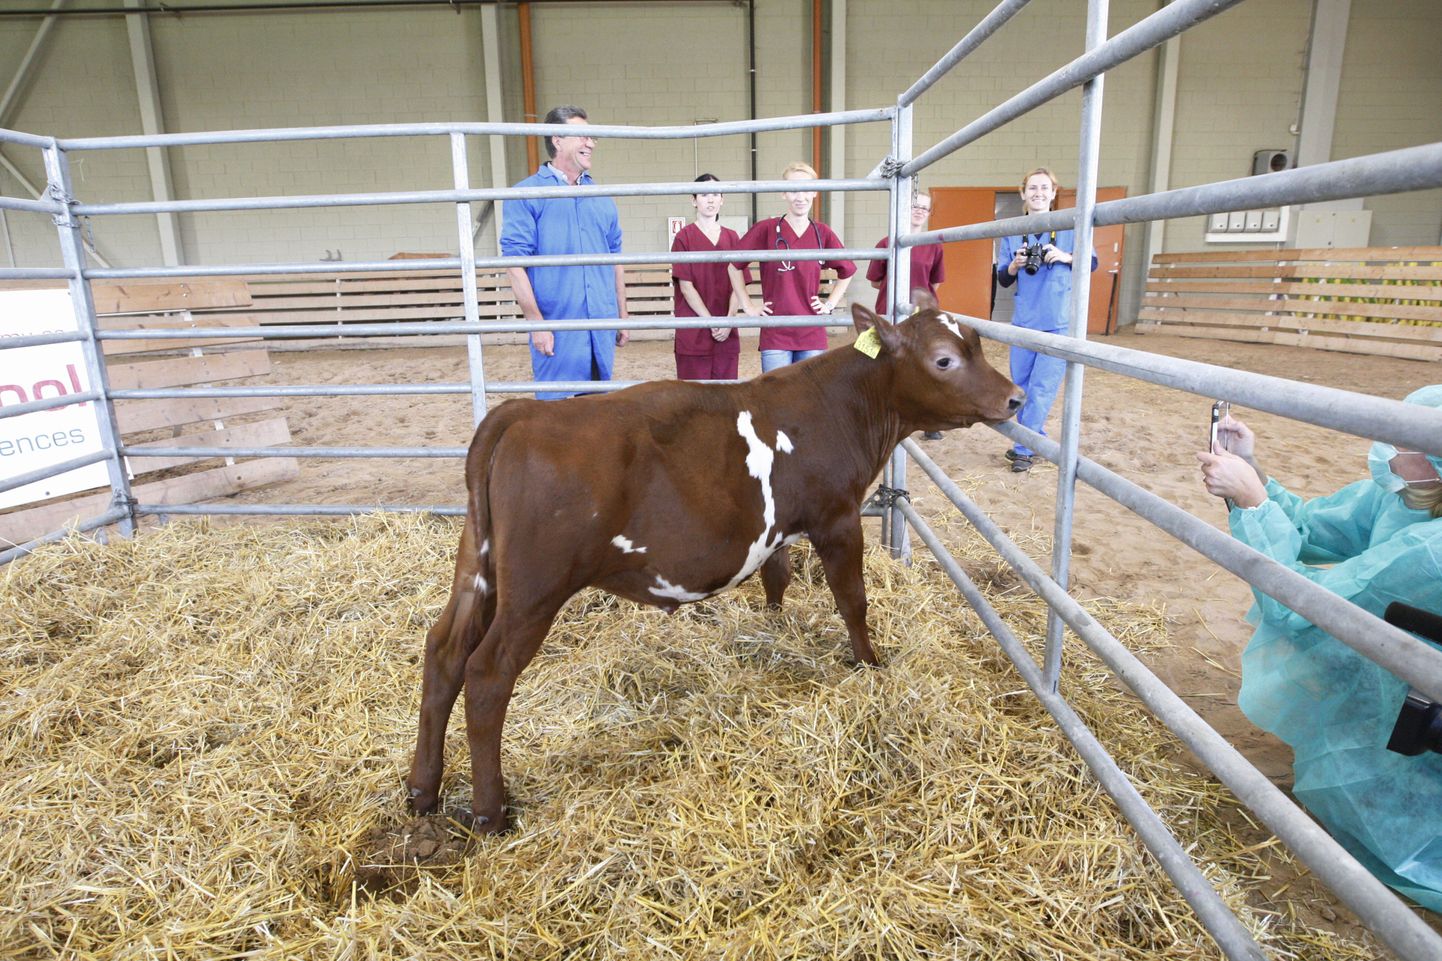 Eelmisel nädalal esitleti EMÜ veterinaarmeditsiini ja loomakasvatuse instituudis transgeenset kloonvasikat nimega Juuni.